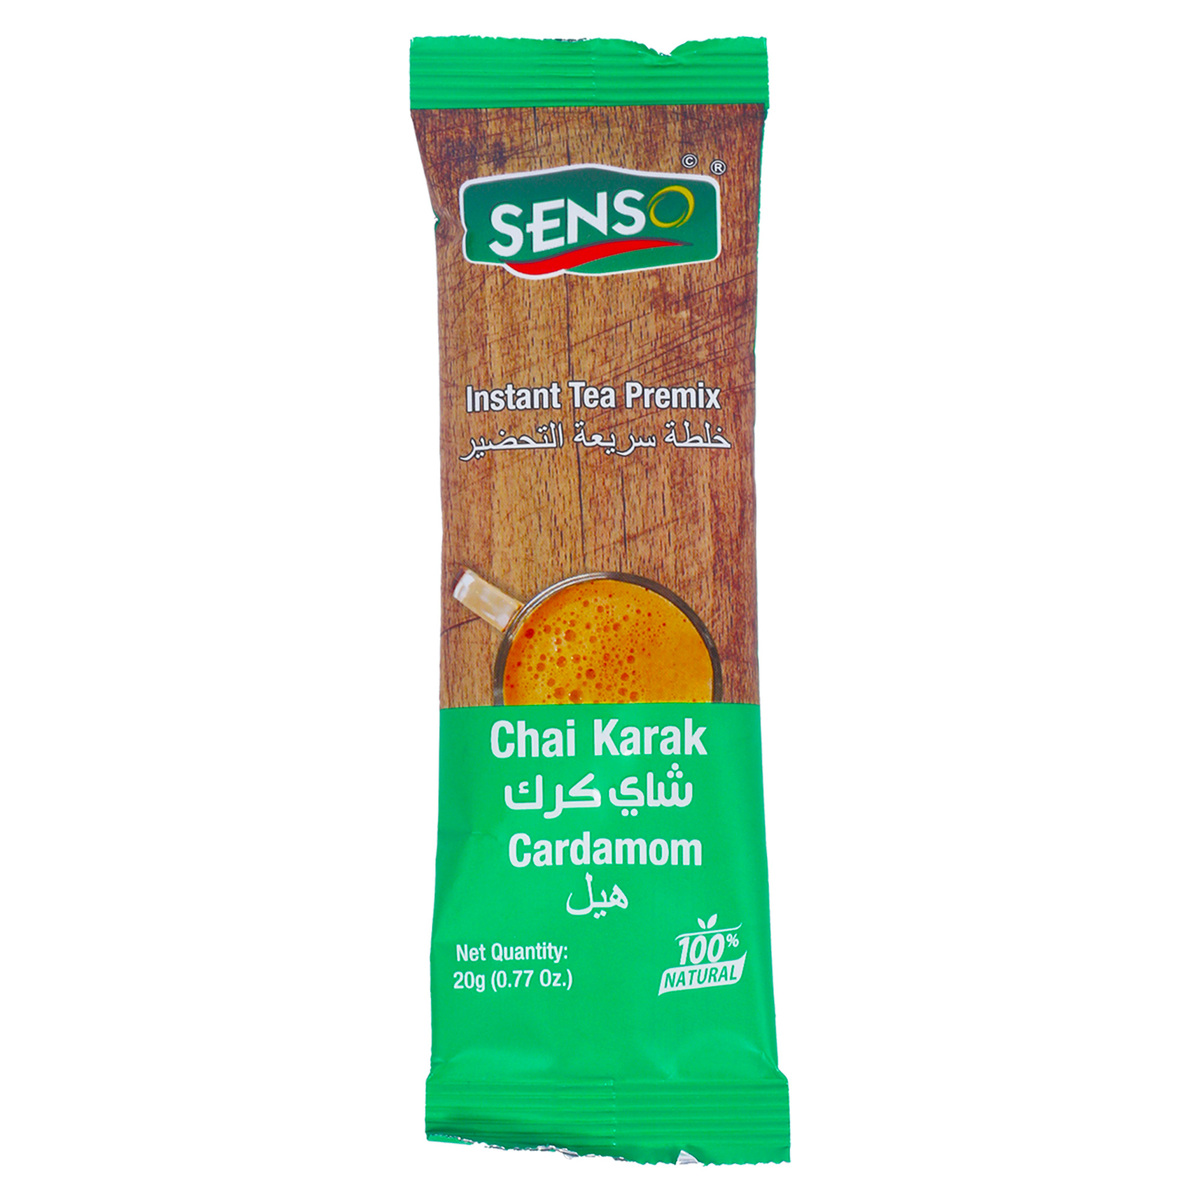 Senso Karak Chai Cardamom 20 g